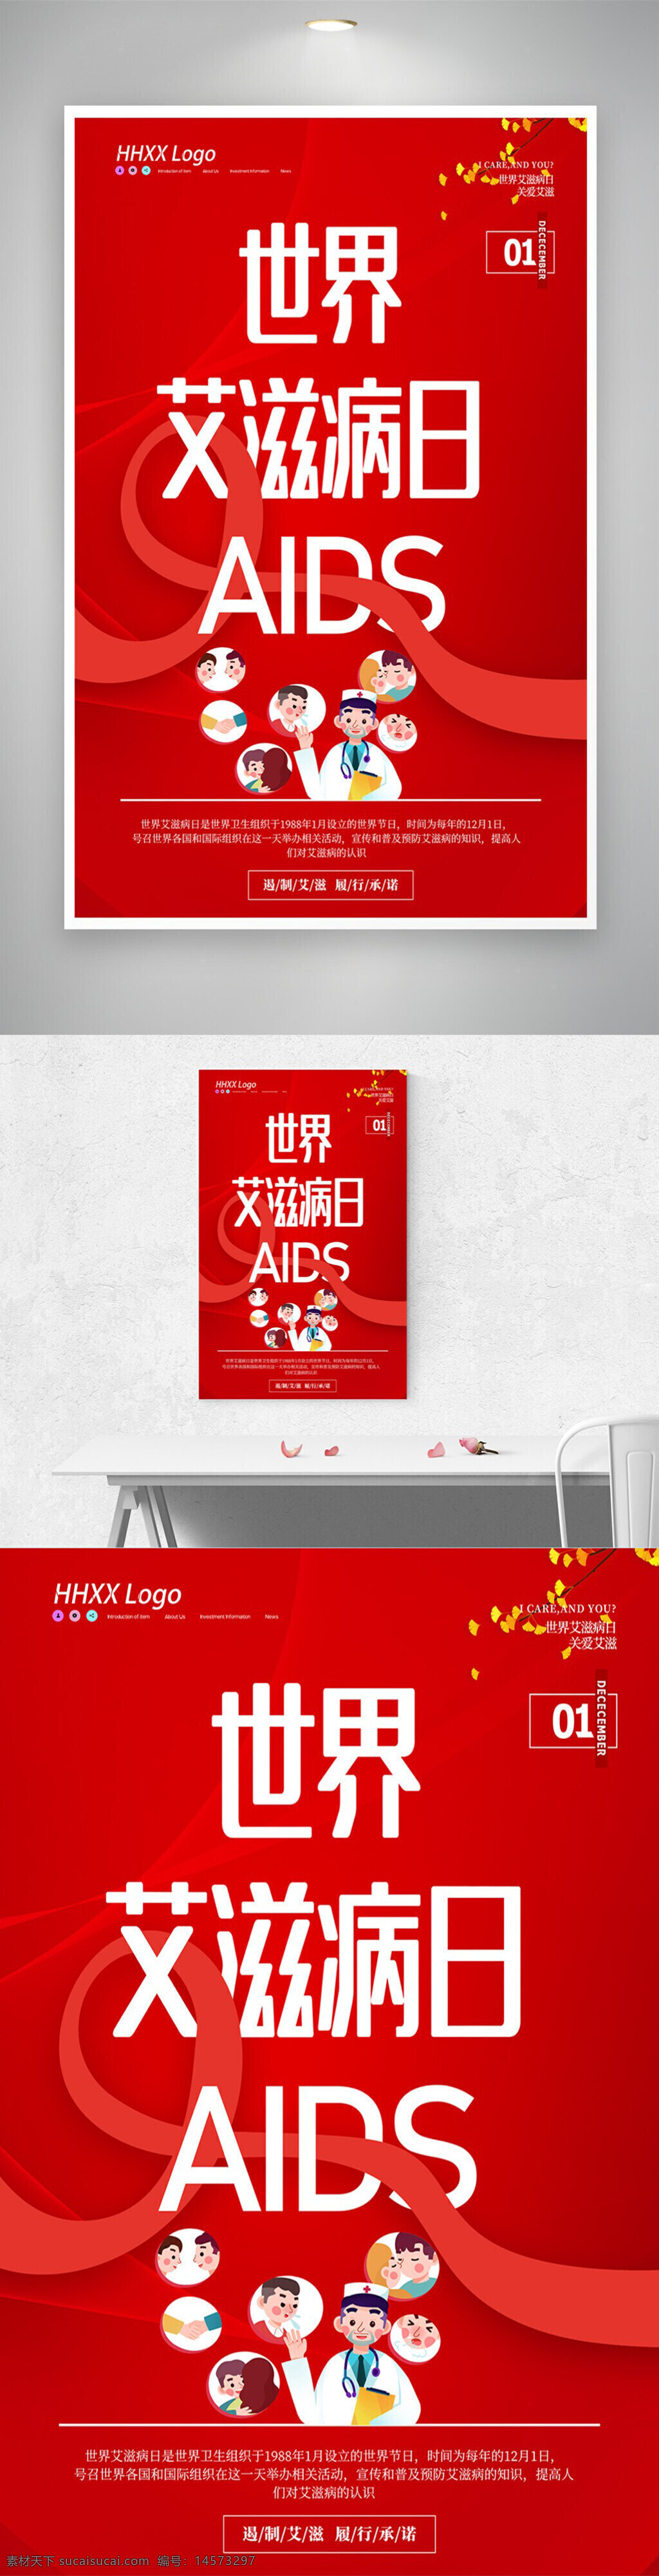 2021年 世界艾滋病日 艾滋病日宣传 艾滋病展板 红丝带 艾滋病标语 艾滋病口号 艾滋病日 艾滋病日海报 艾滋病日广告 艾滋病日标语 艾滋病宣传栏 艾滋病知识 预防艾滋 艾滋宣传 公益海报